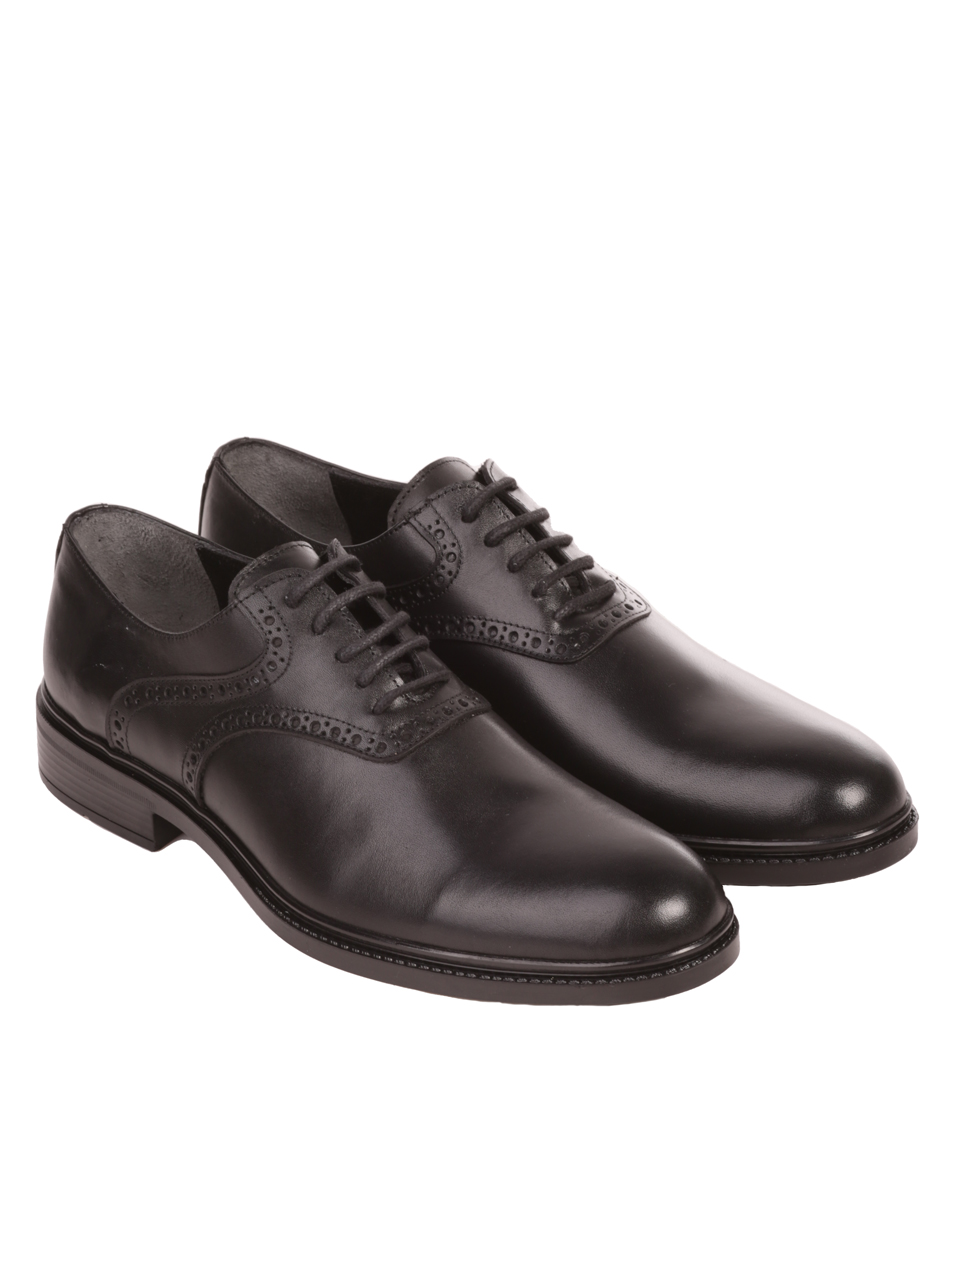 Eлегантни мъжки обувки от естествена кожа в черно 7AT-23739 black